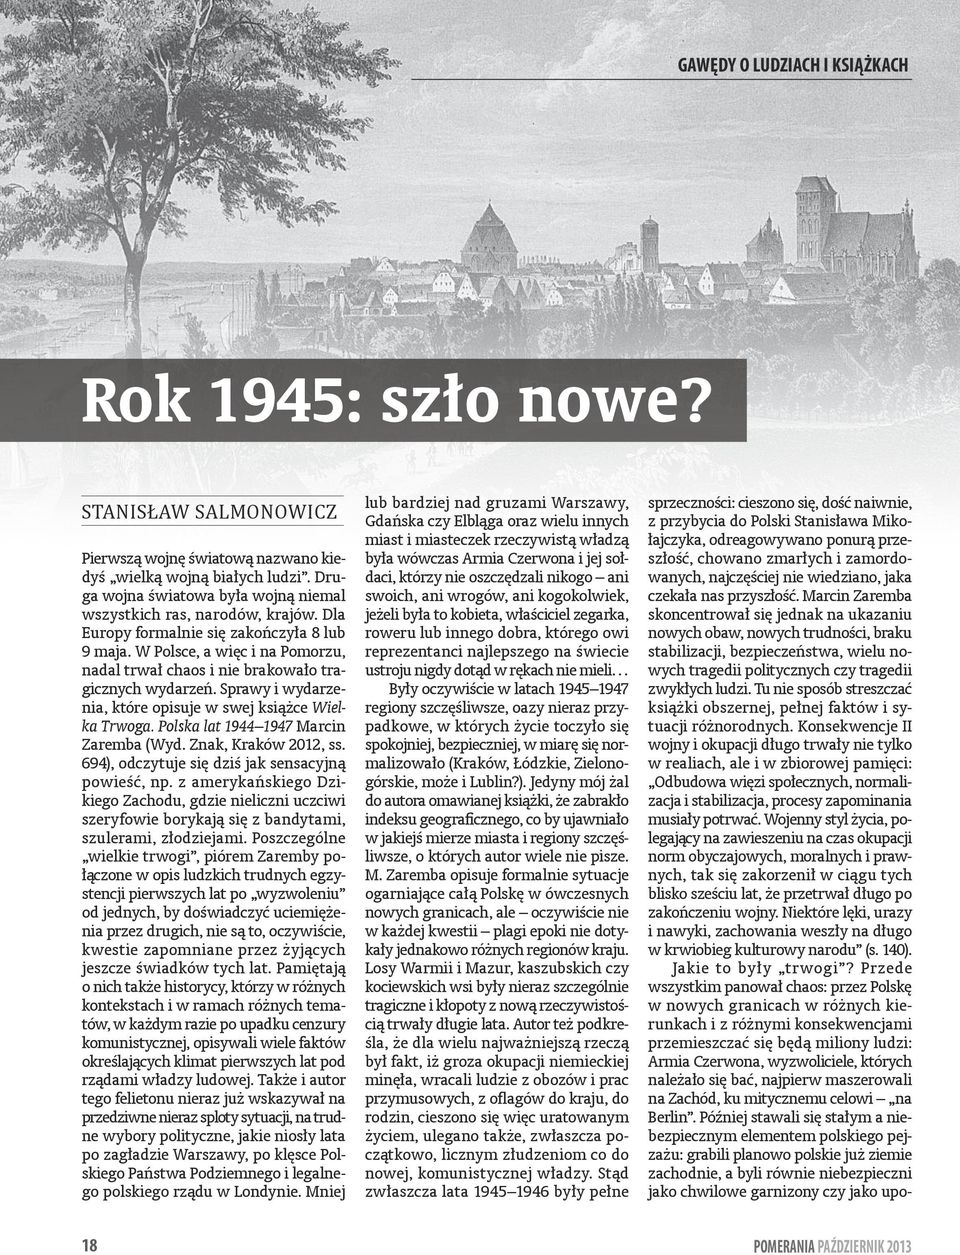 W Polsce, a więc i na Pomorzu, nadal trwał chaos i nie brakowało tragicznych wydarzeń. Sprawy i wydarzenia, które opisuje w swej książce Wielka Trwoga. Polska lat 1944 1947 Marcin Zaremba (Wyd.